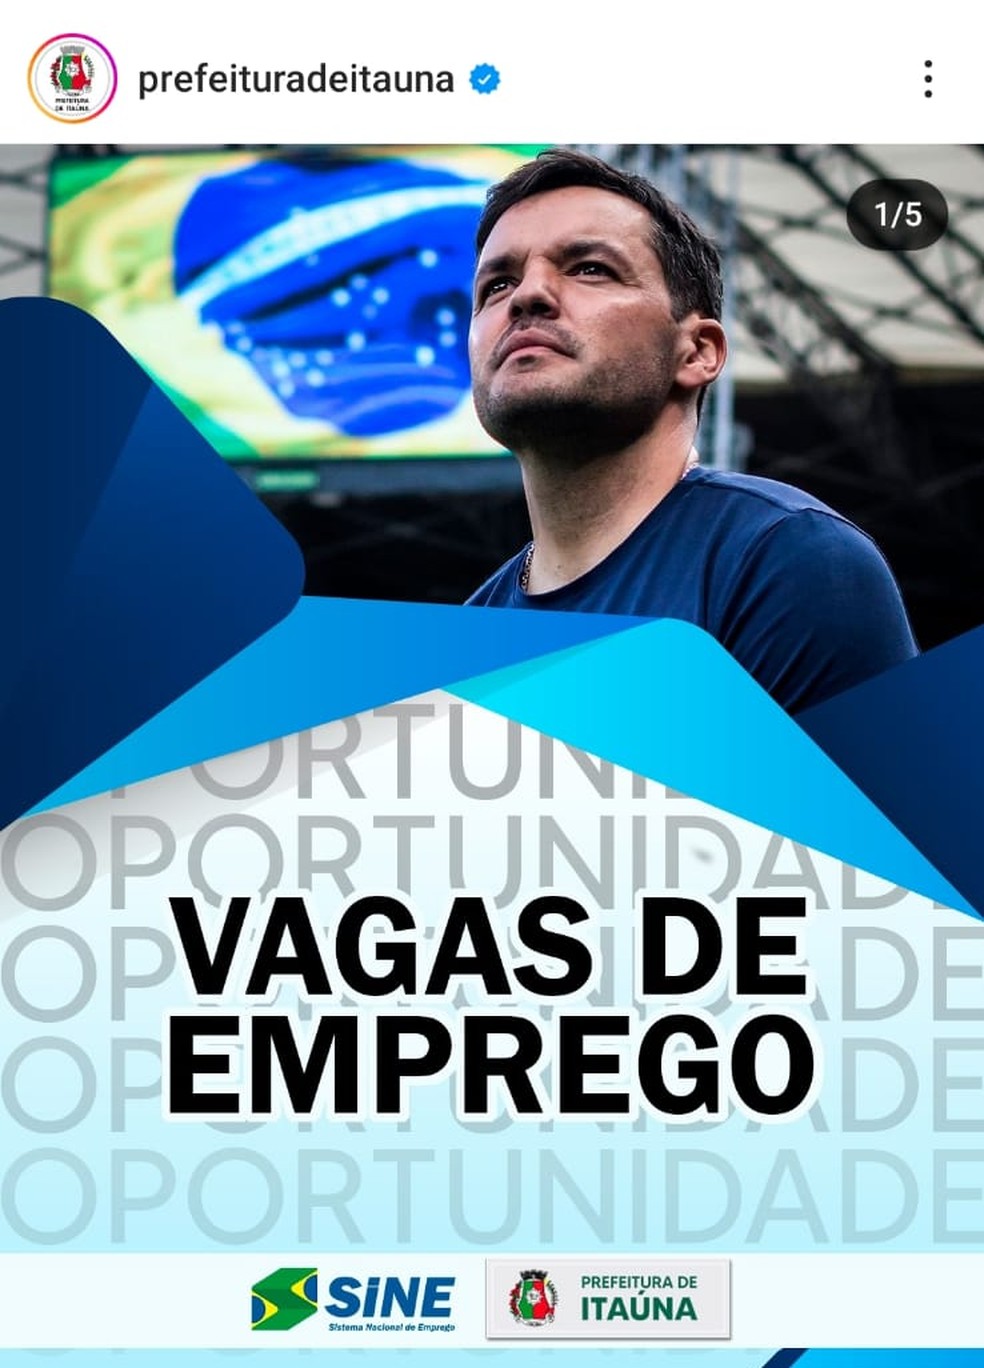 Prefeitura de Itáuna usou foto do ex-técnico do Cruzeiro em anúncio de vagas de emprego — Foto: Reprodução redes sociais /Foto original: Gustavo Aleixo